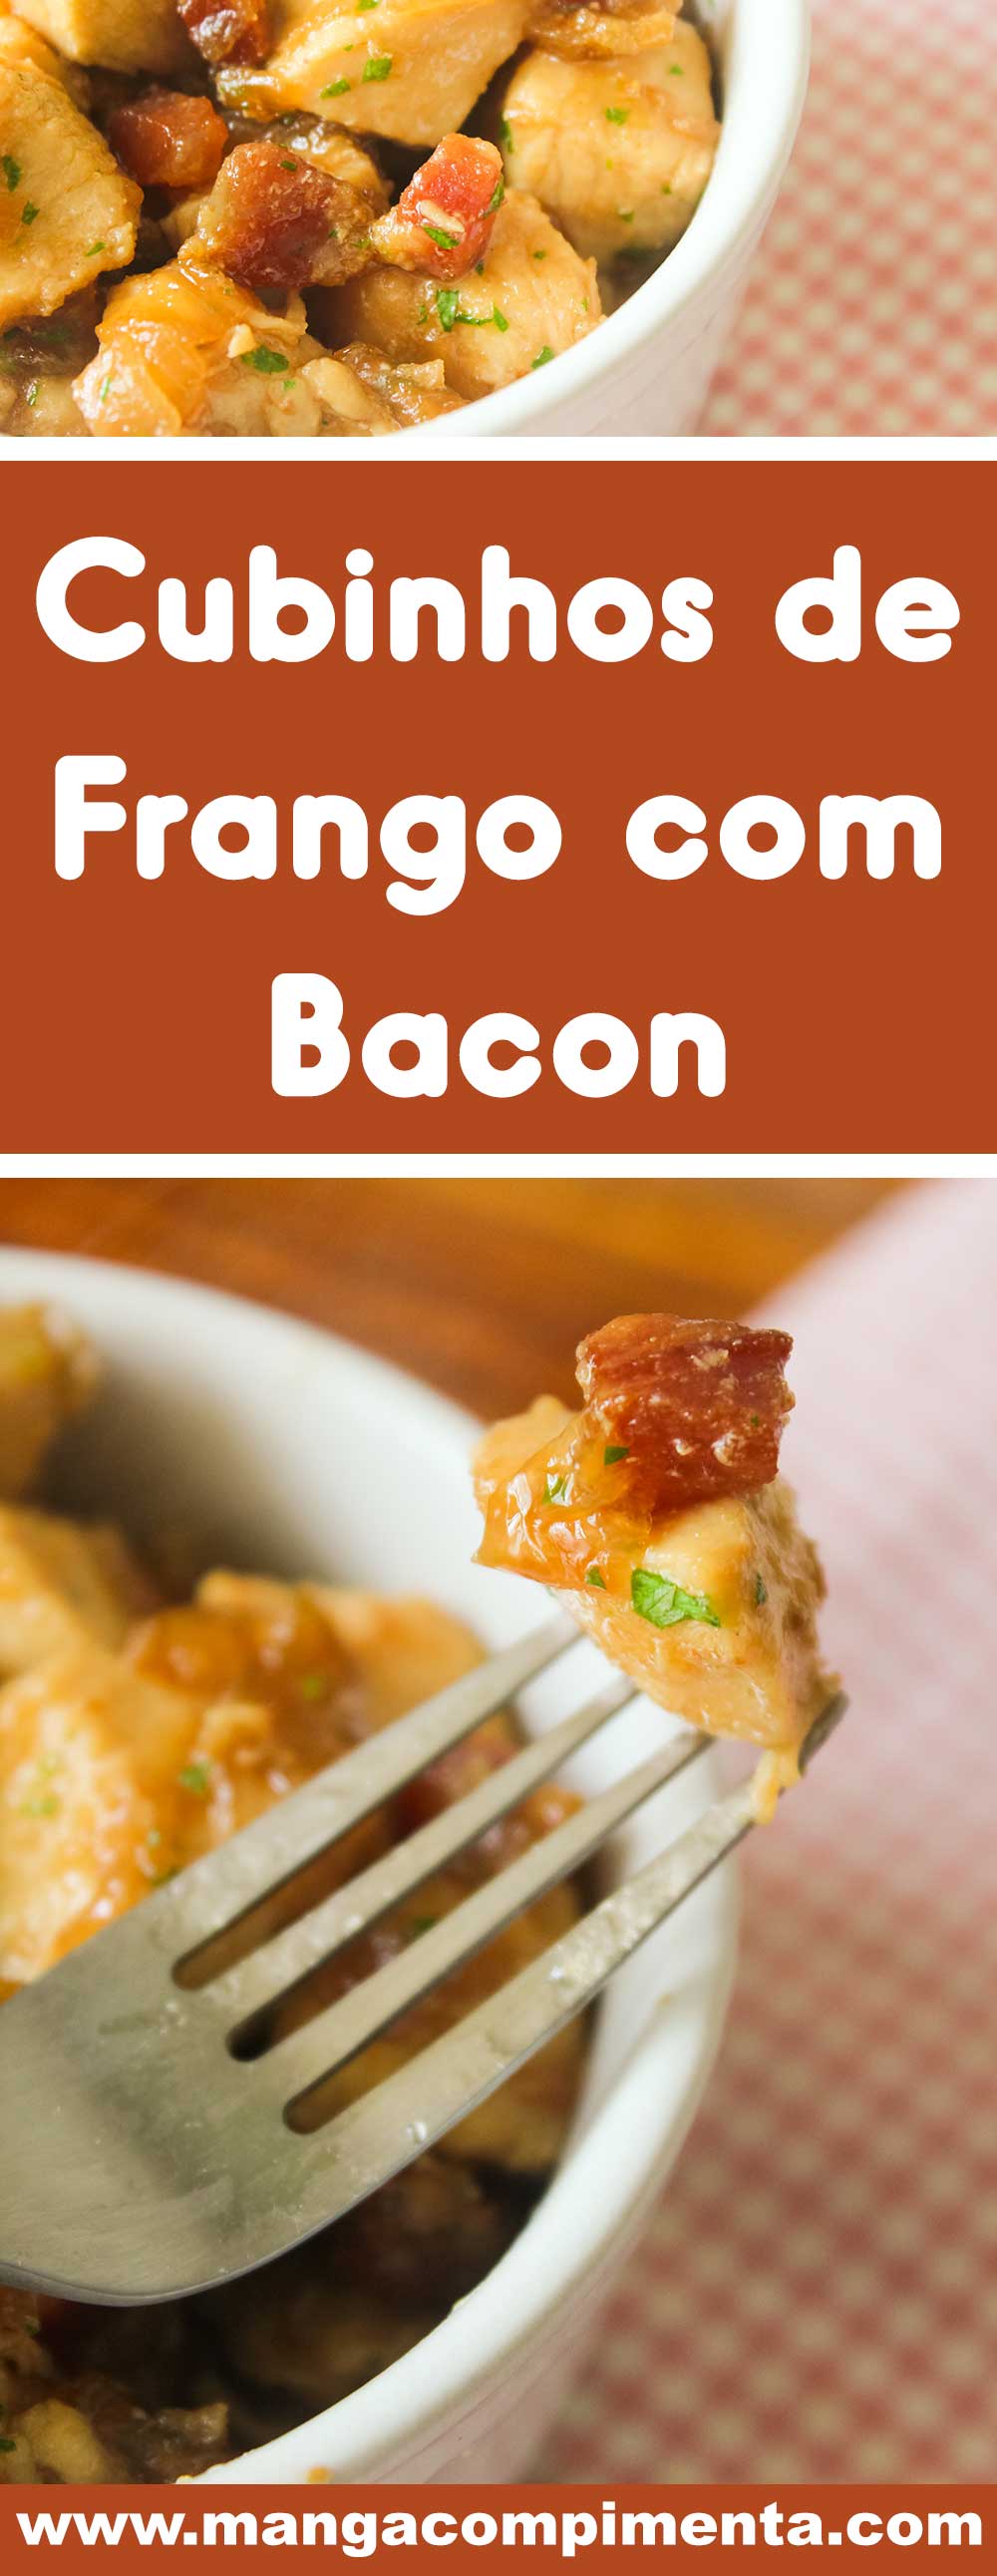 Receita de Cubinhos de Frango com Bacon - prepare um prato diferente e gostoso para o almoço ou jantar da semana.